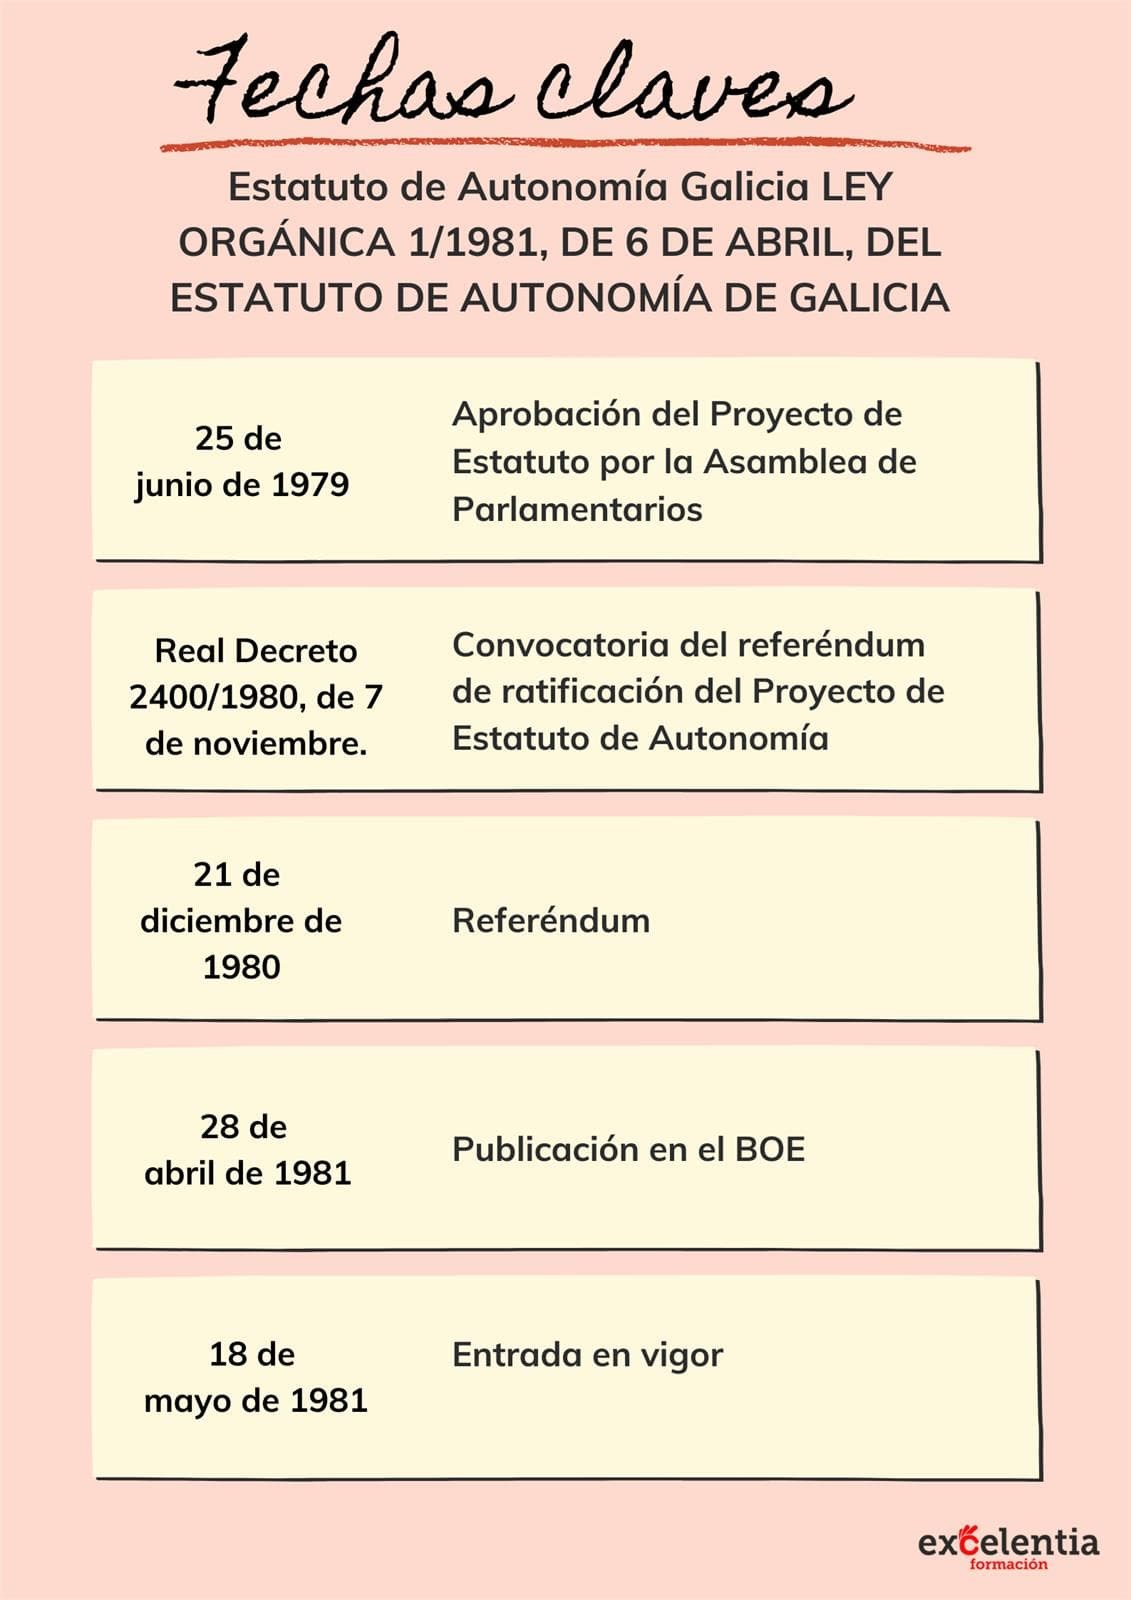 Esquema fechas claves - Estatuto de Autonomía de Galicia  - Imagen 1